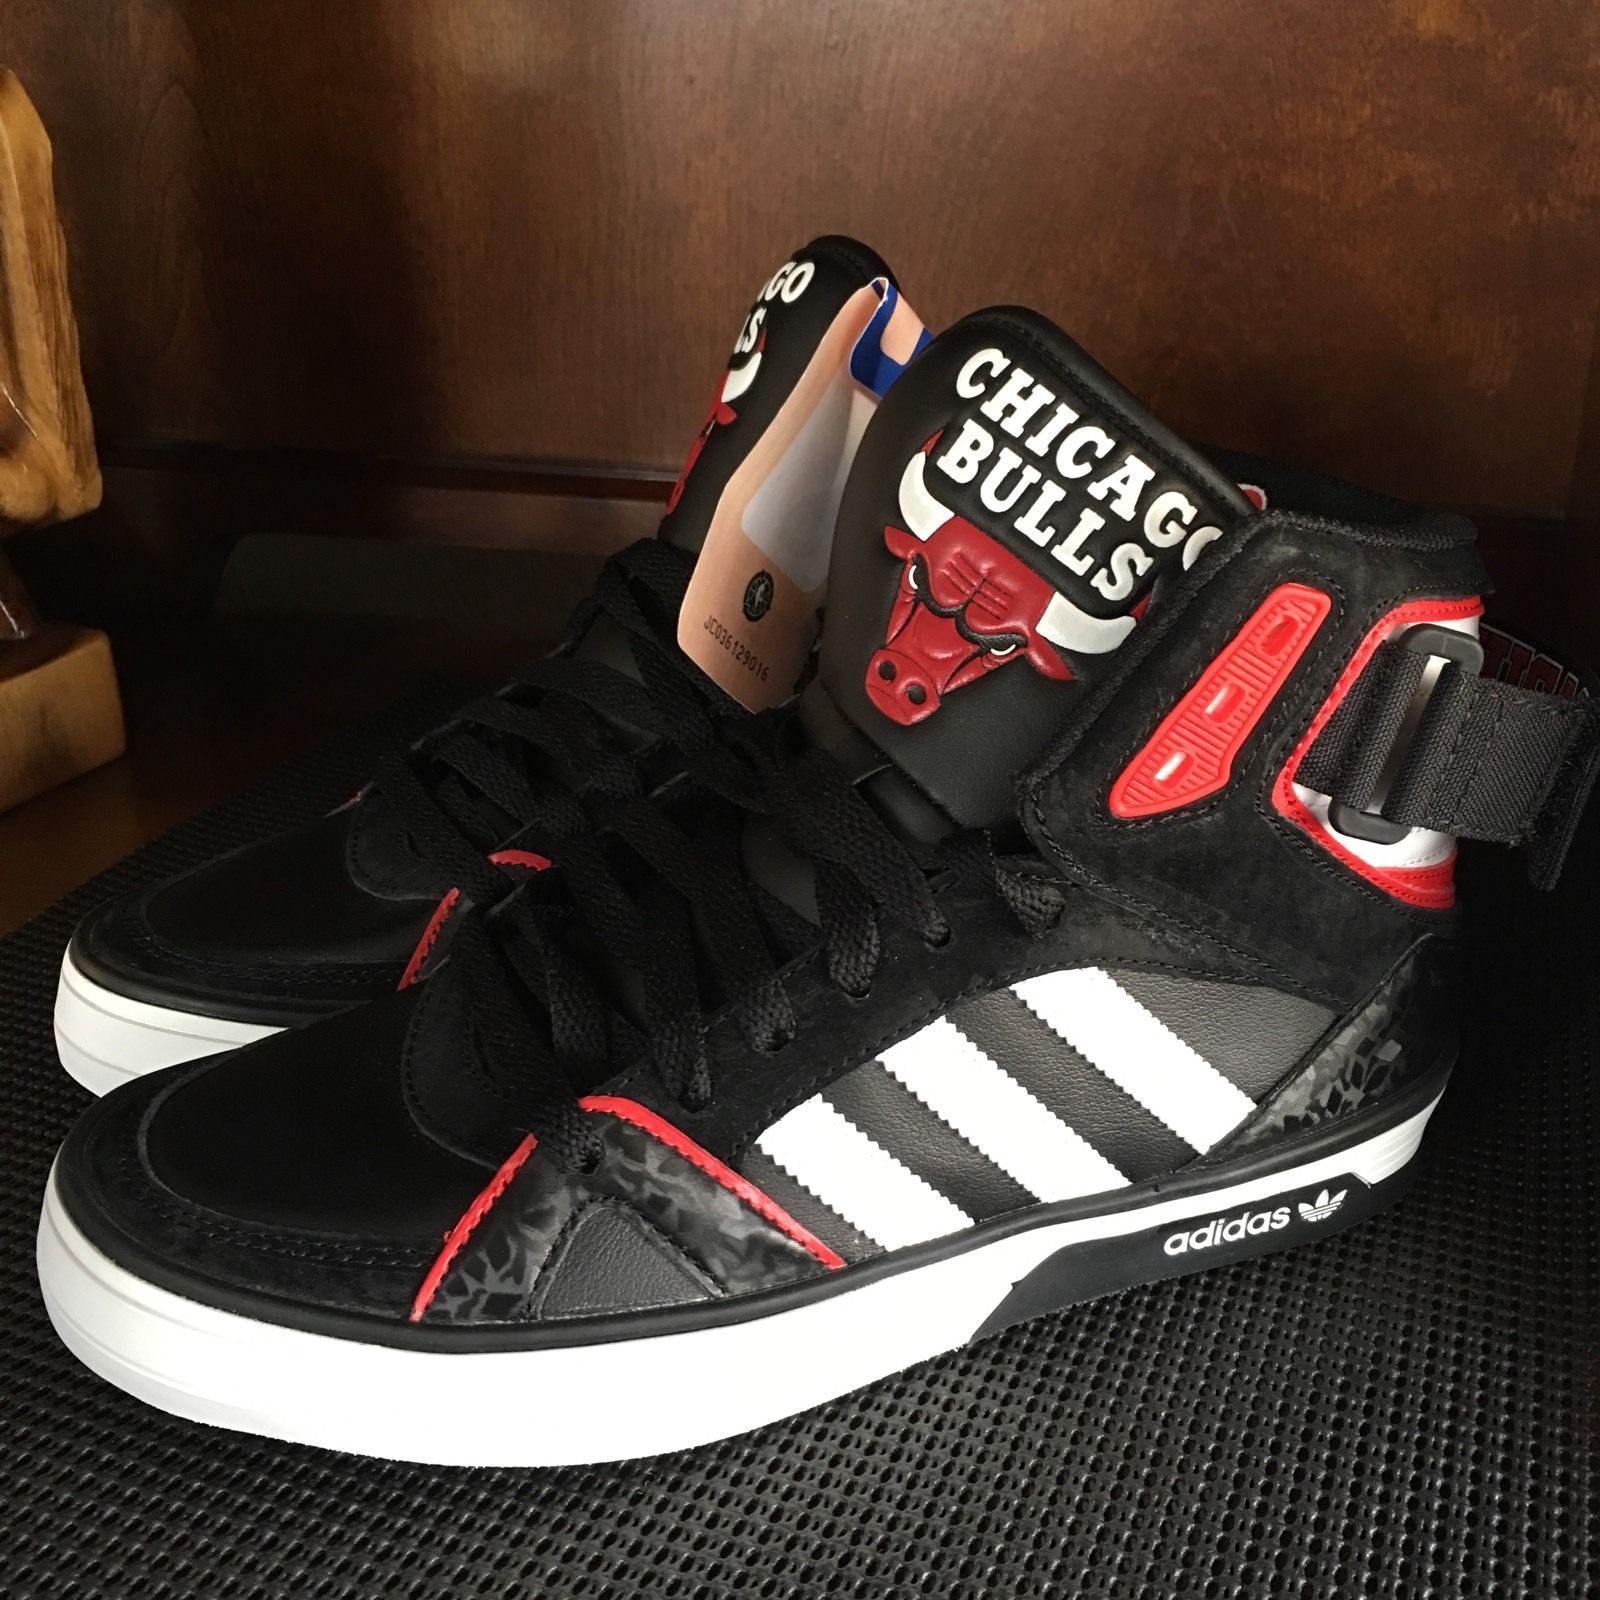 Chicago Bulls Adidas Originals Space Diver Shoes Boys Size 4.5 Rare